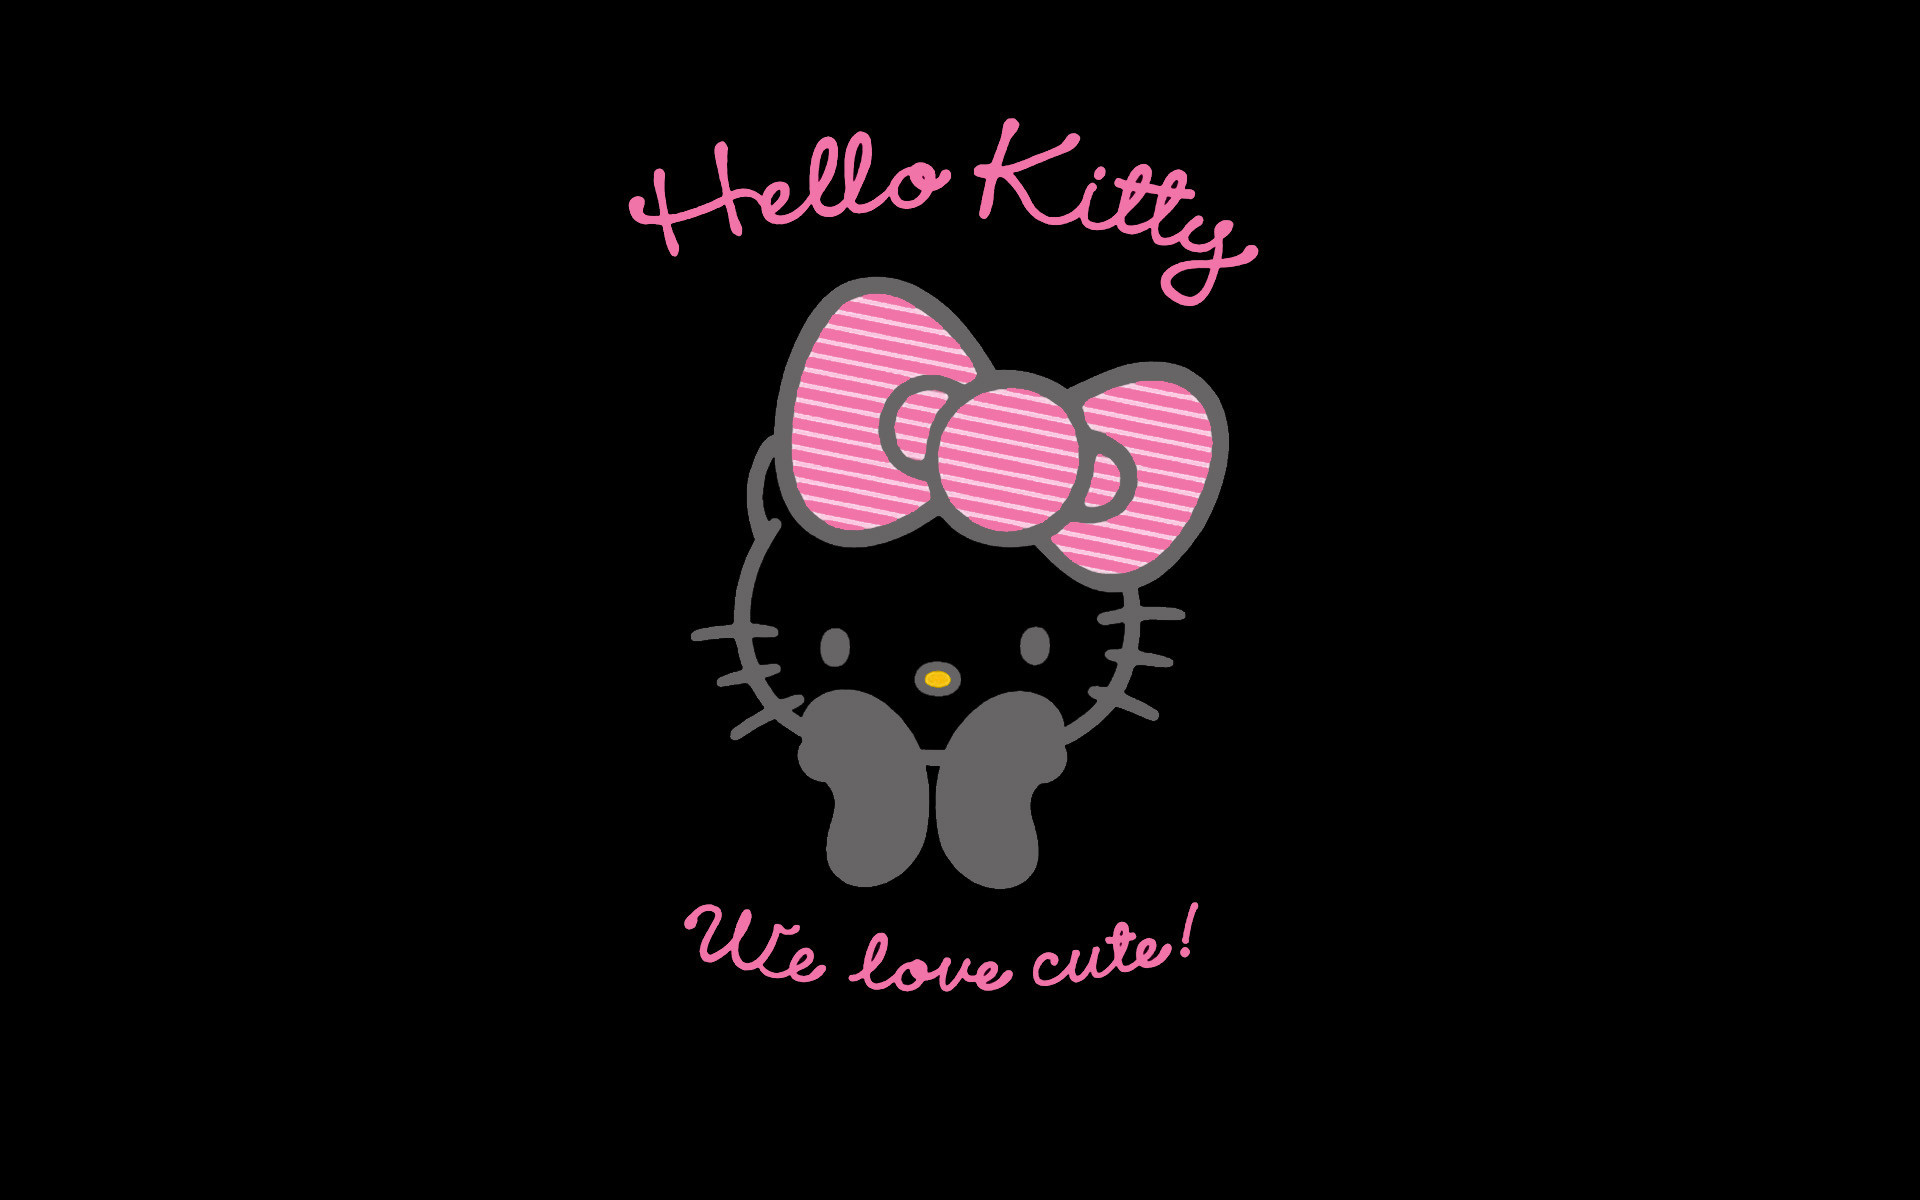 Xin chào các bạn! Hôm nay mình muốn giới thiệu với các bạn hình nền Hello Kitty đầy màu sắc này. Với background đen và hồng, chiếc mũi tên vàng nổi bật giữa trung tâm, chú mèo Kitty xinh đẹp sẽ làm cho màn hình của bạn trở nên đáng yêu hơn bao giờ hết.